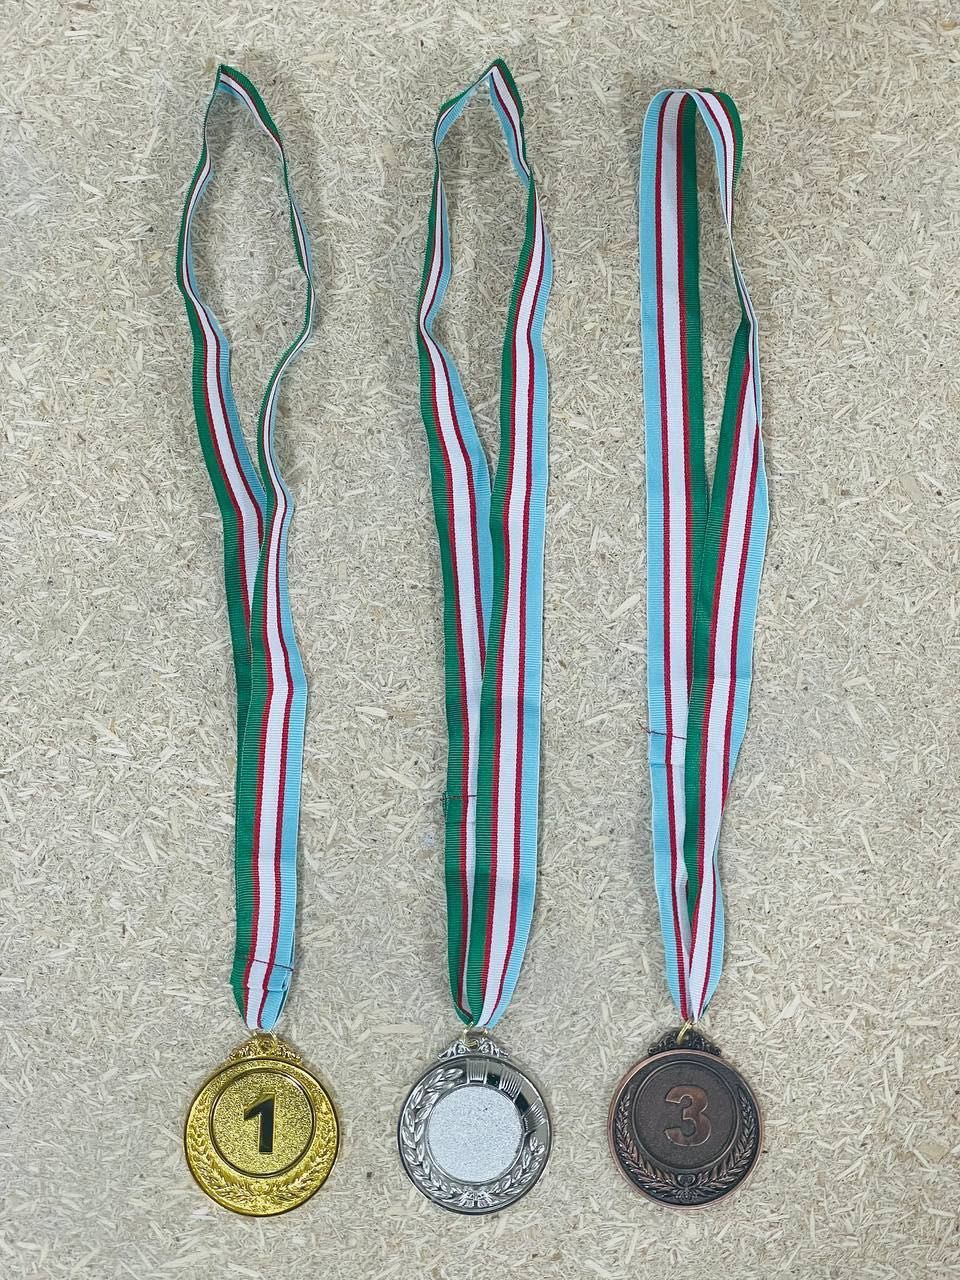 Медали от первых рук